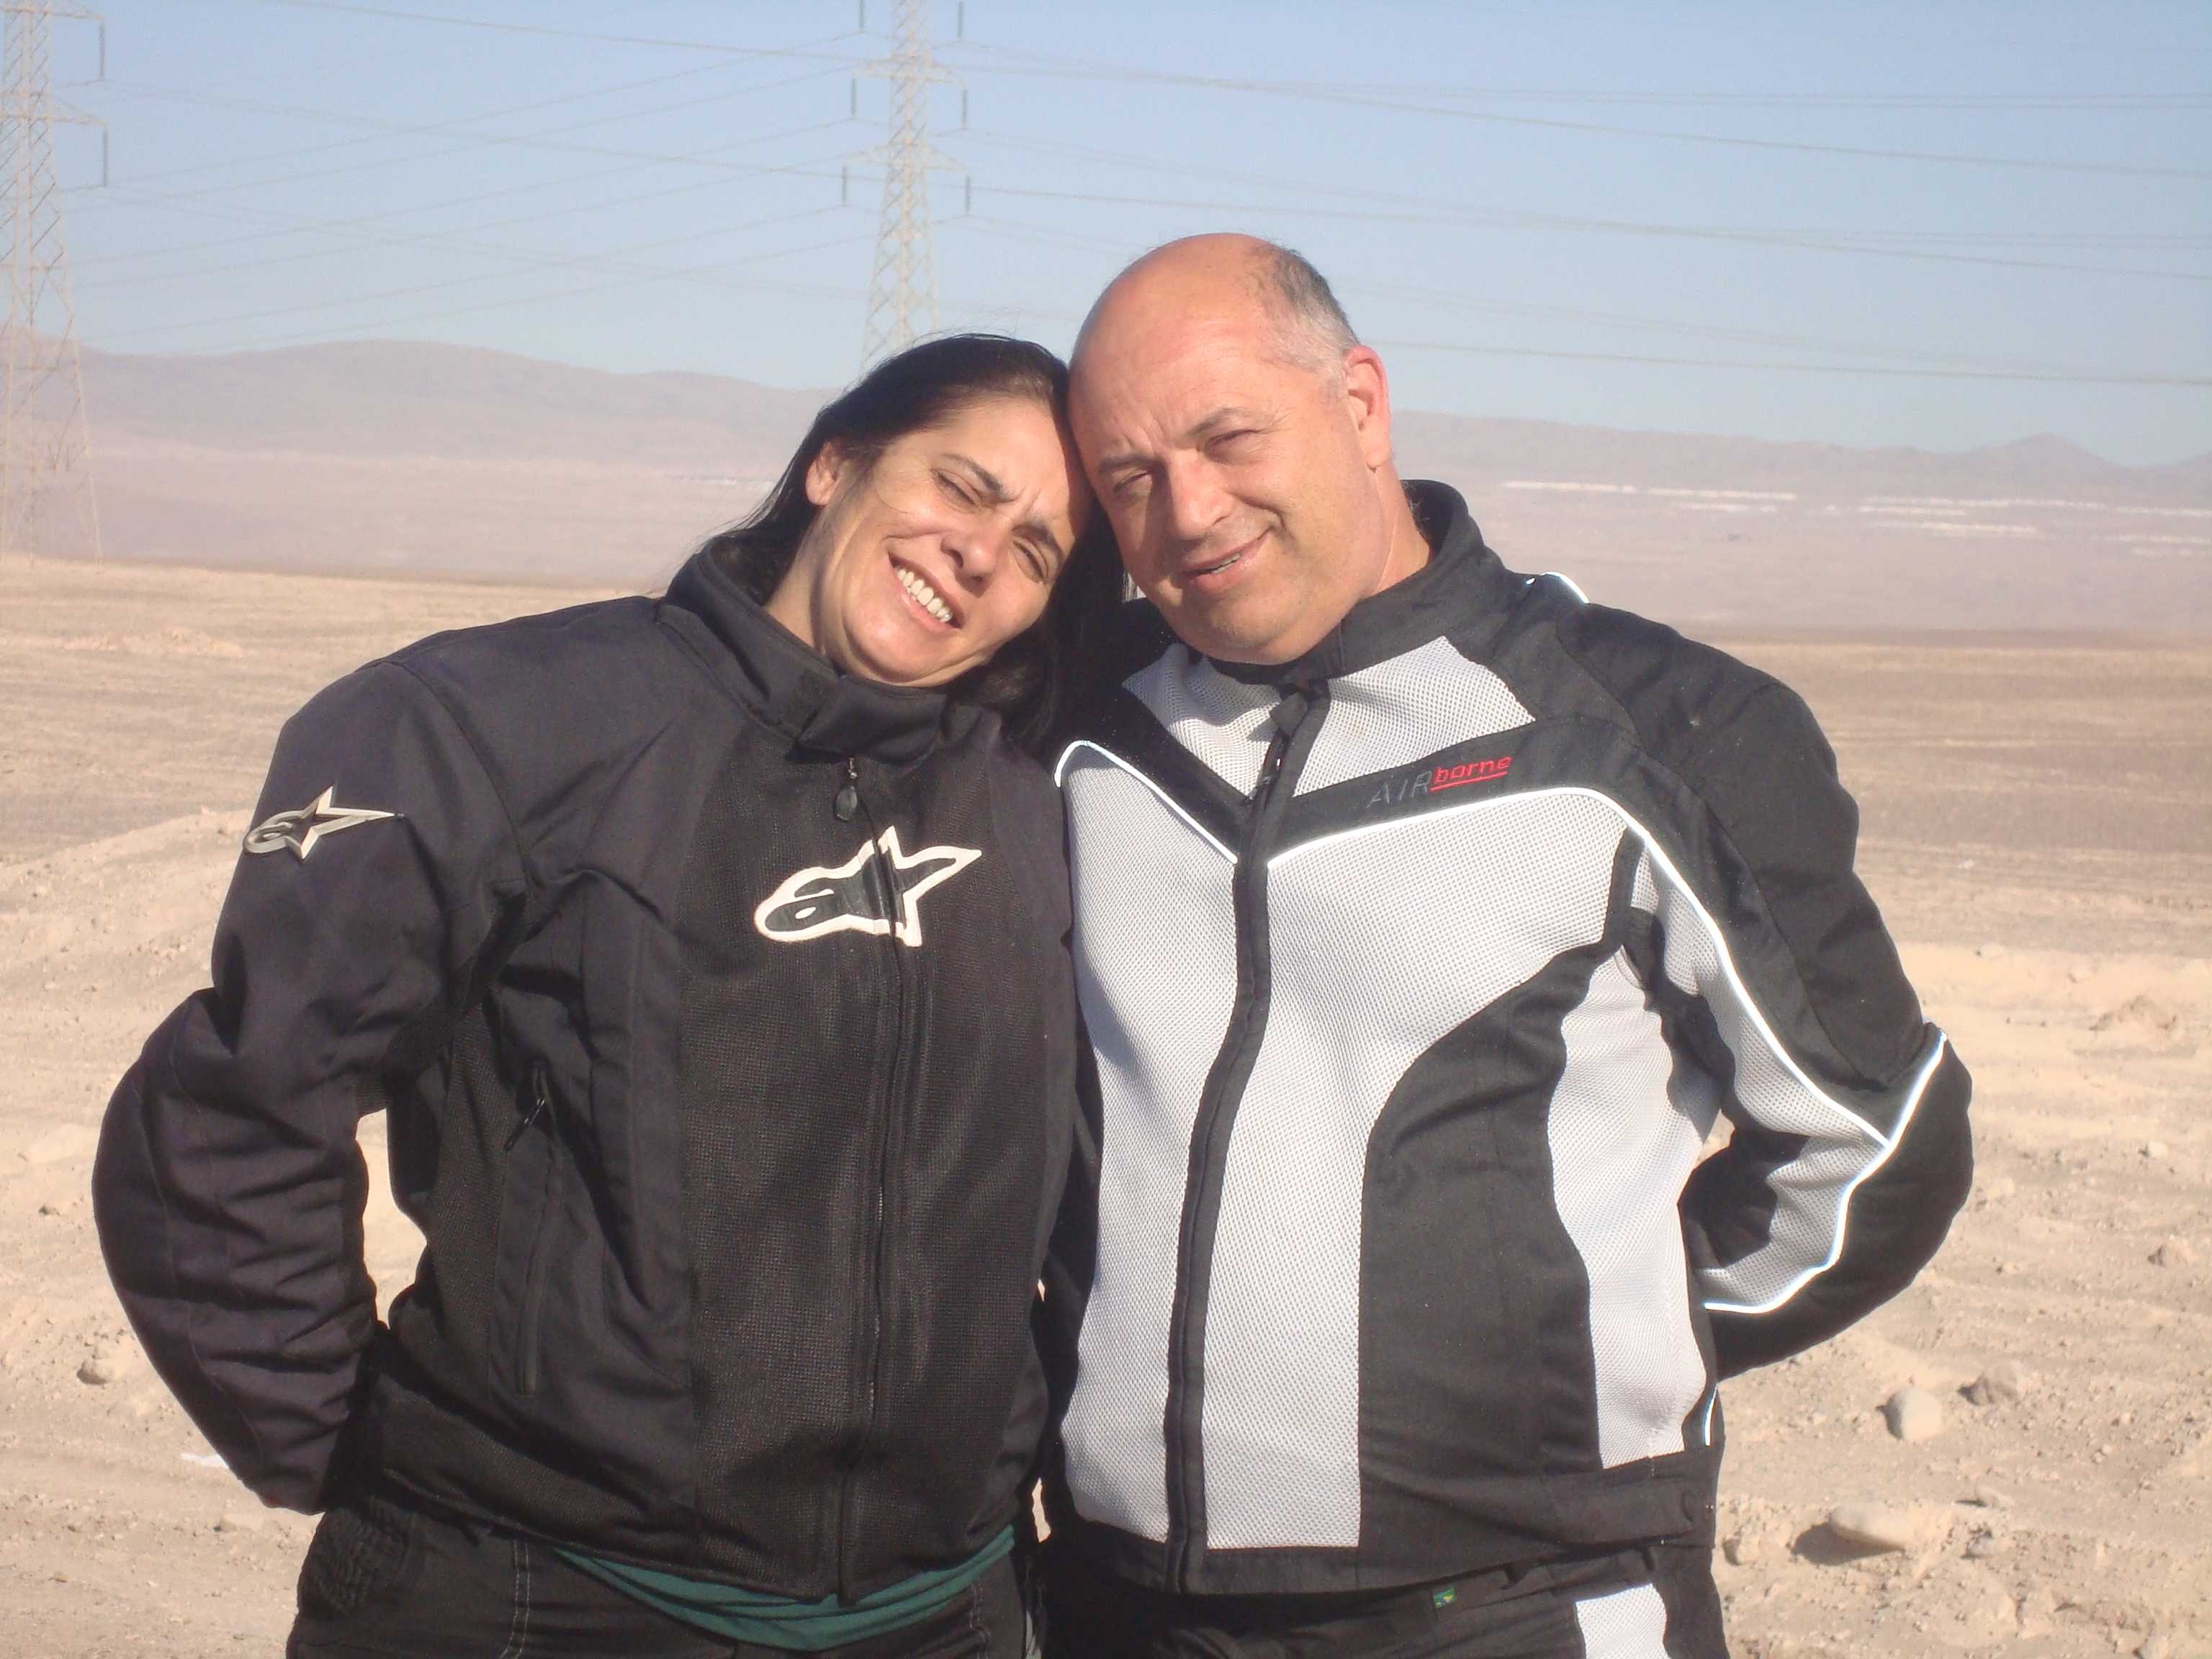 Um parada no deserto para fotografia (Silvana e Ademir)